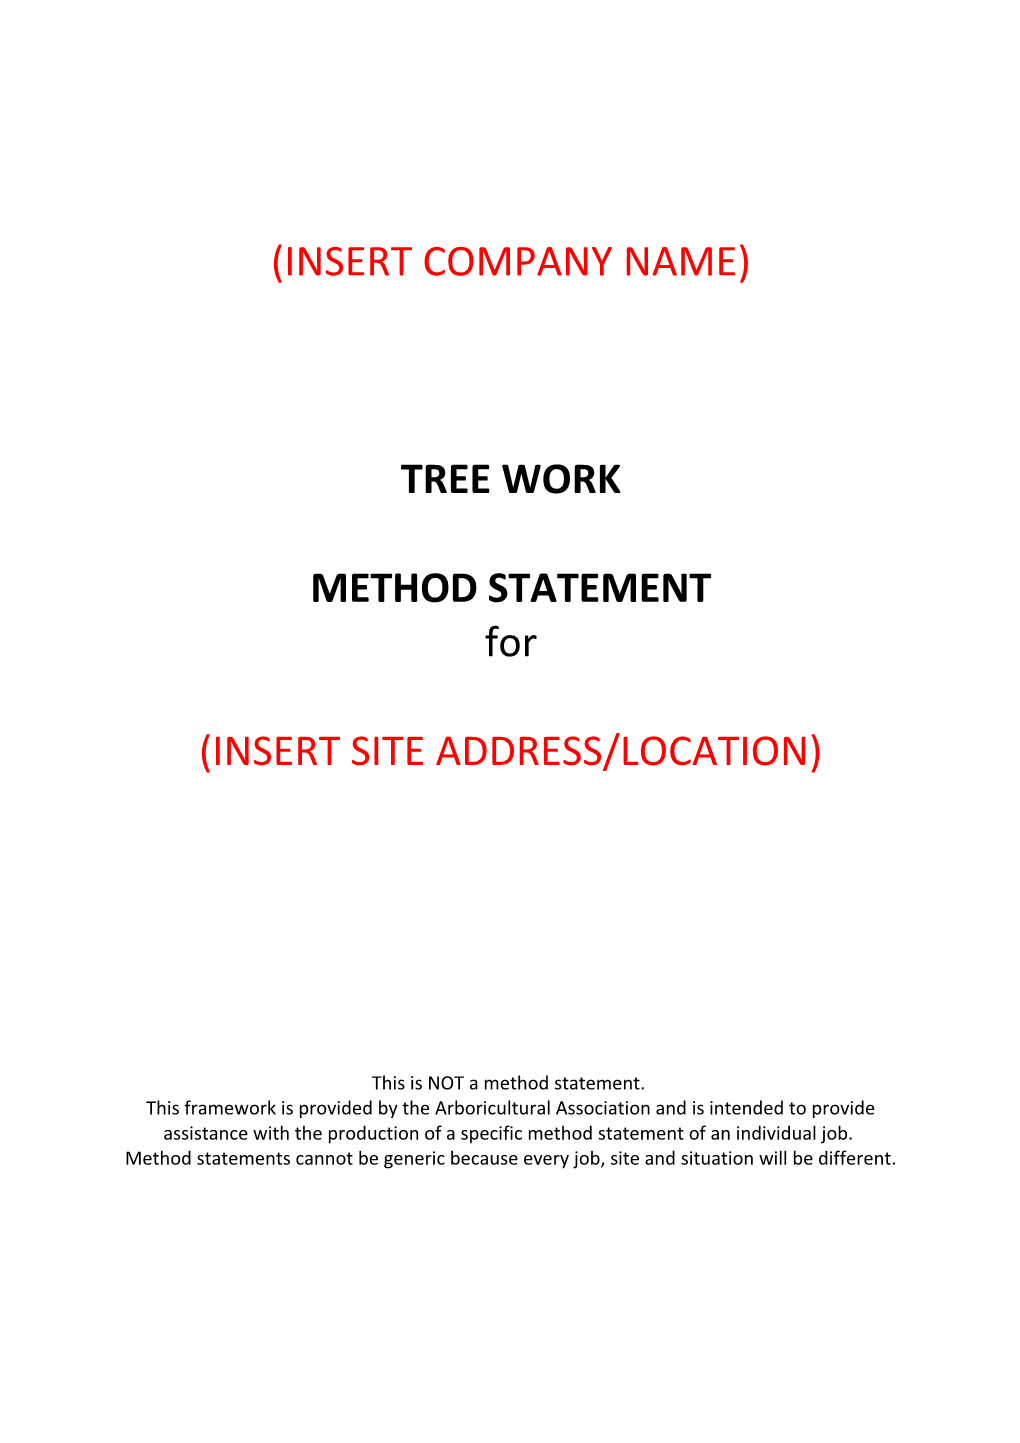 Collis Tree Services